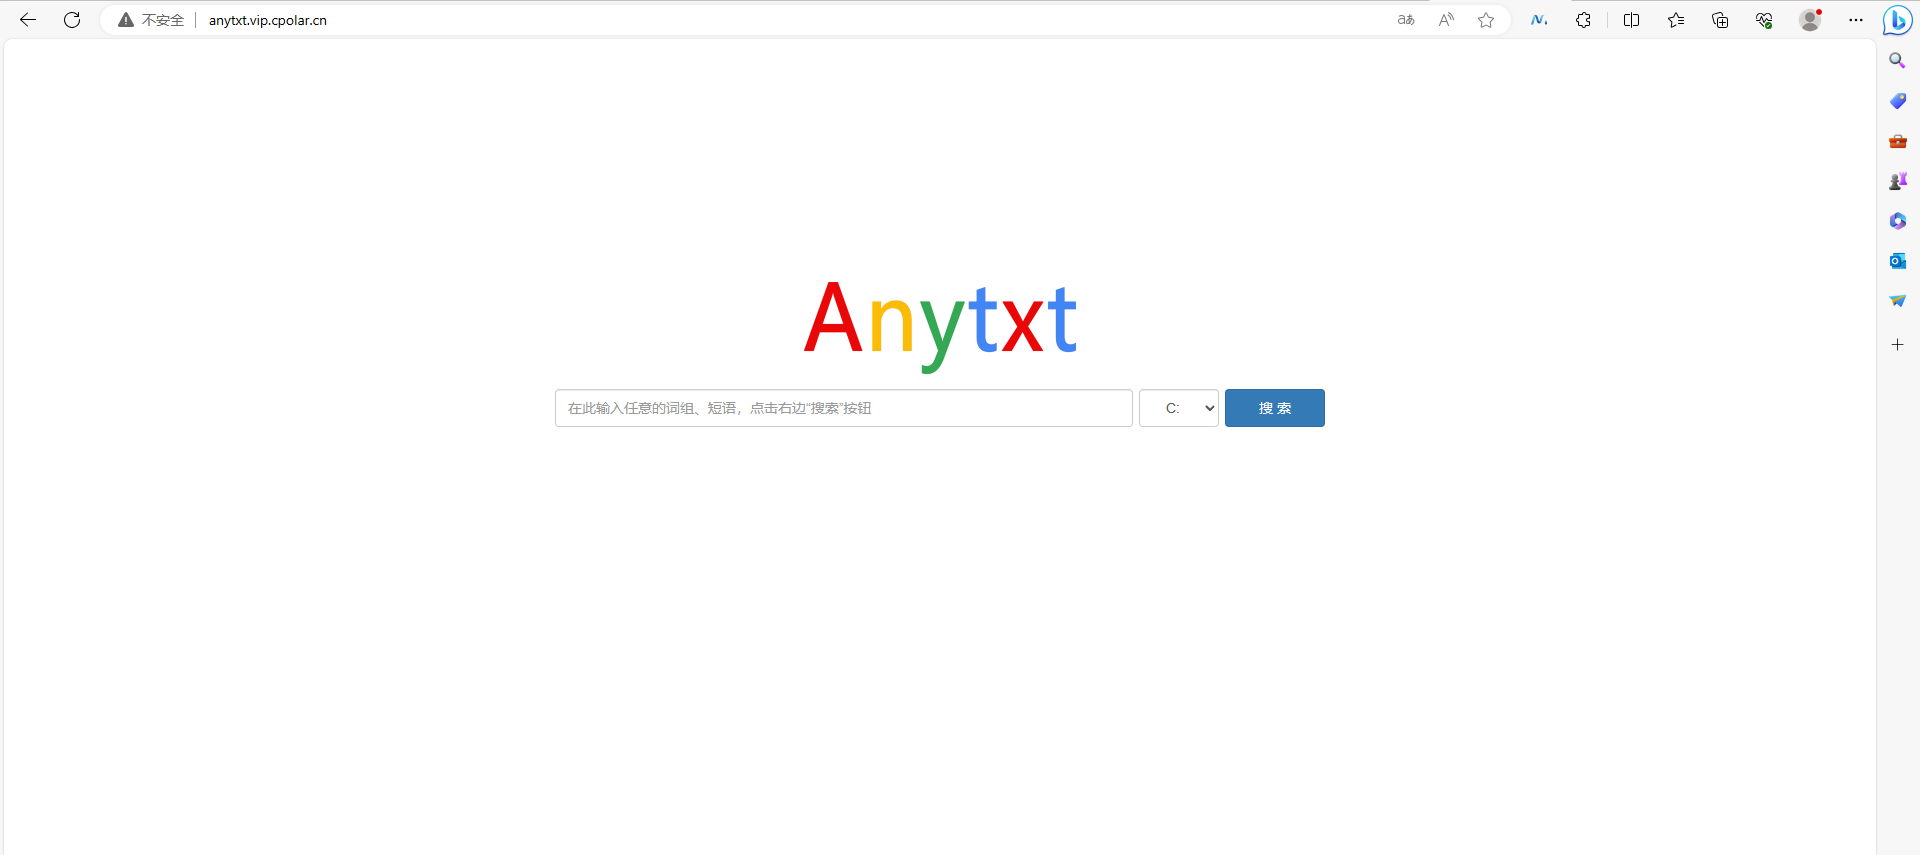 超强文档搜索引擎AnyTXT Searcher本地搭建,c9cdab7ba762a770854bf9a868e06a2,第32张